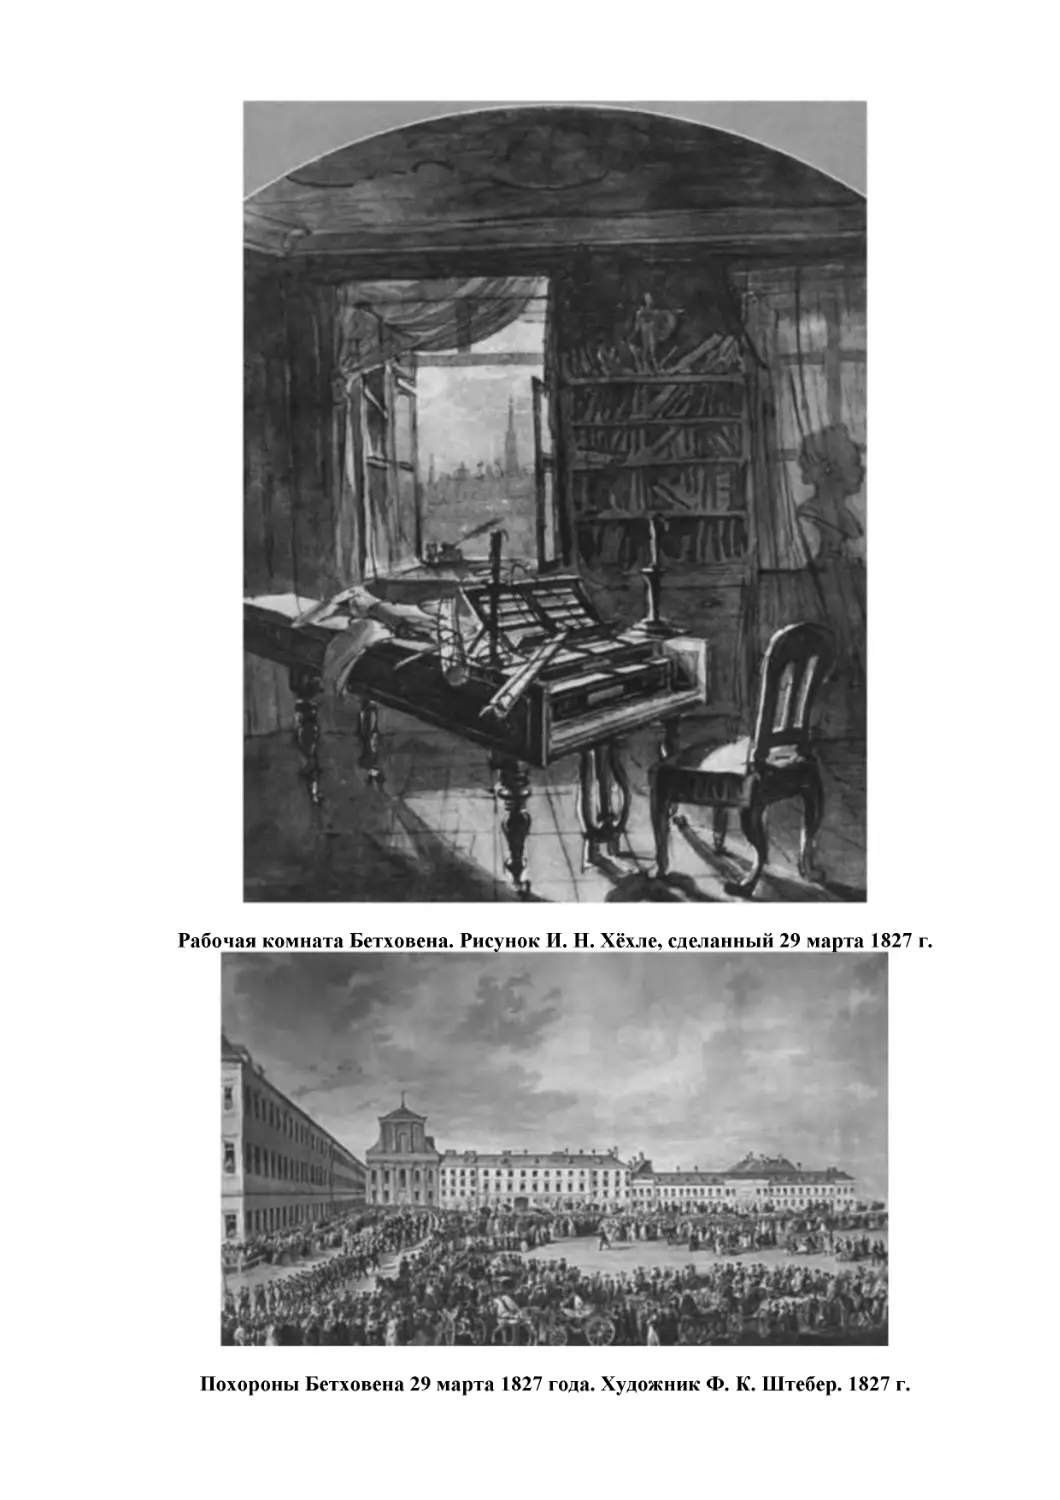 Рабочая комната Бетховена. Рисунок И. Н. Хёхле, сделанный 29 марта 1827 г.
Похороны Бетховена 29 марта 1827 года. Художник Ф. К. Штебер. 1827 г.